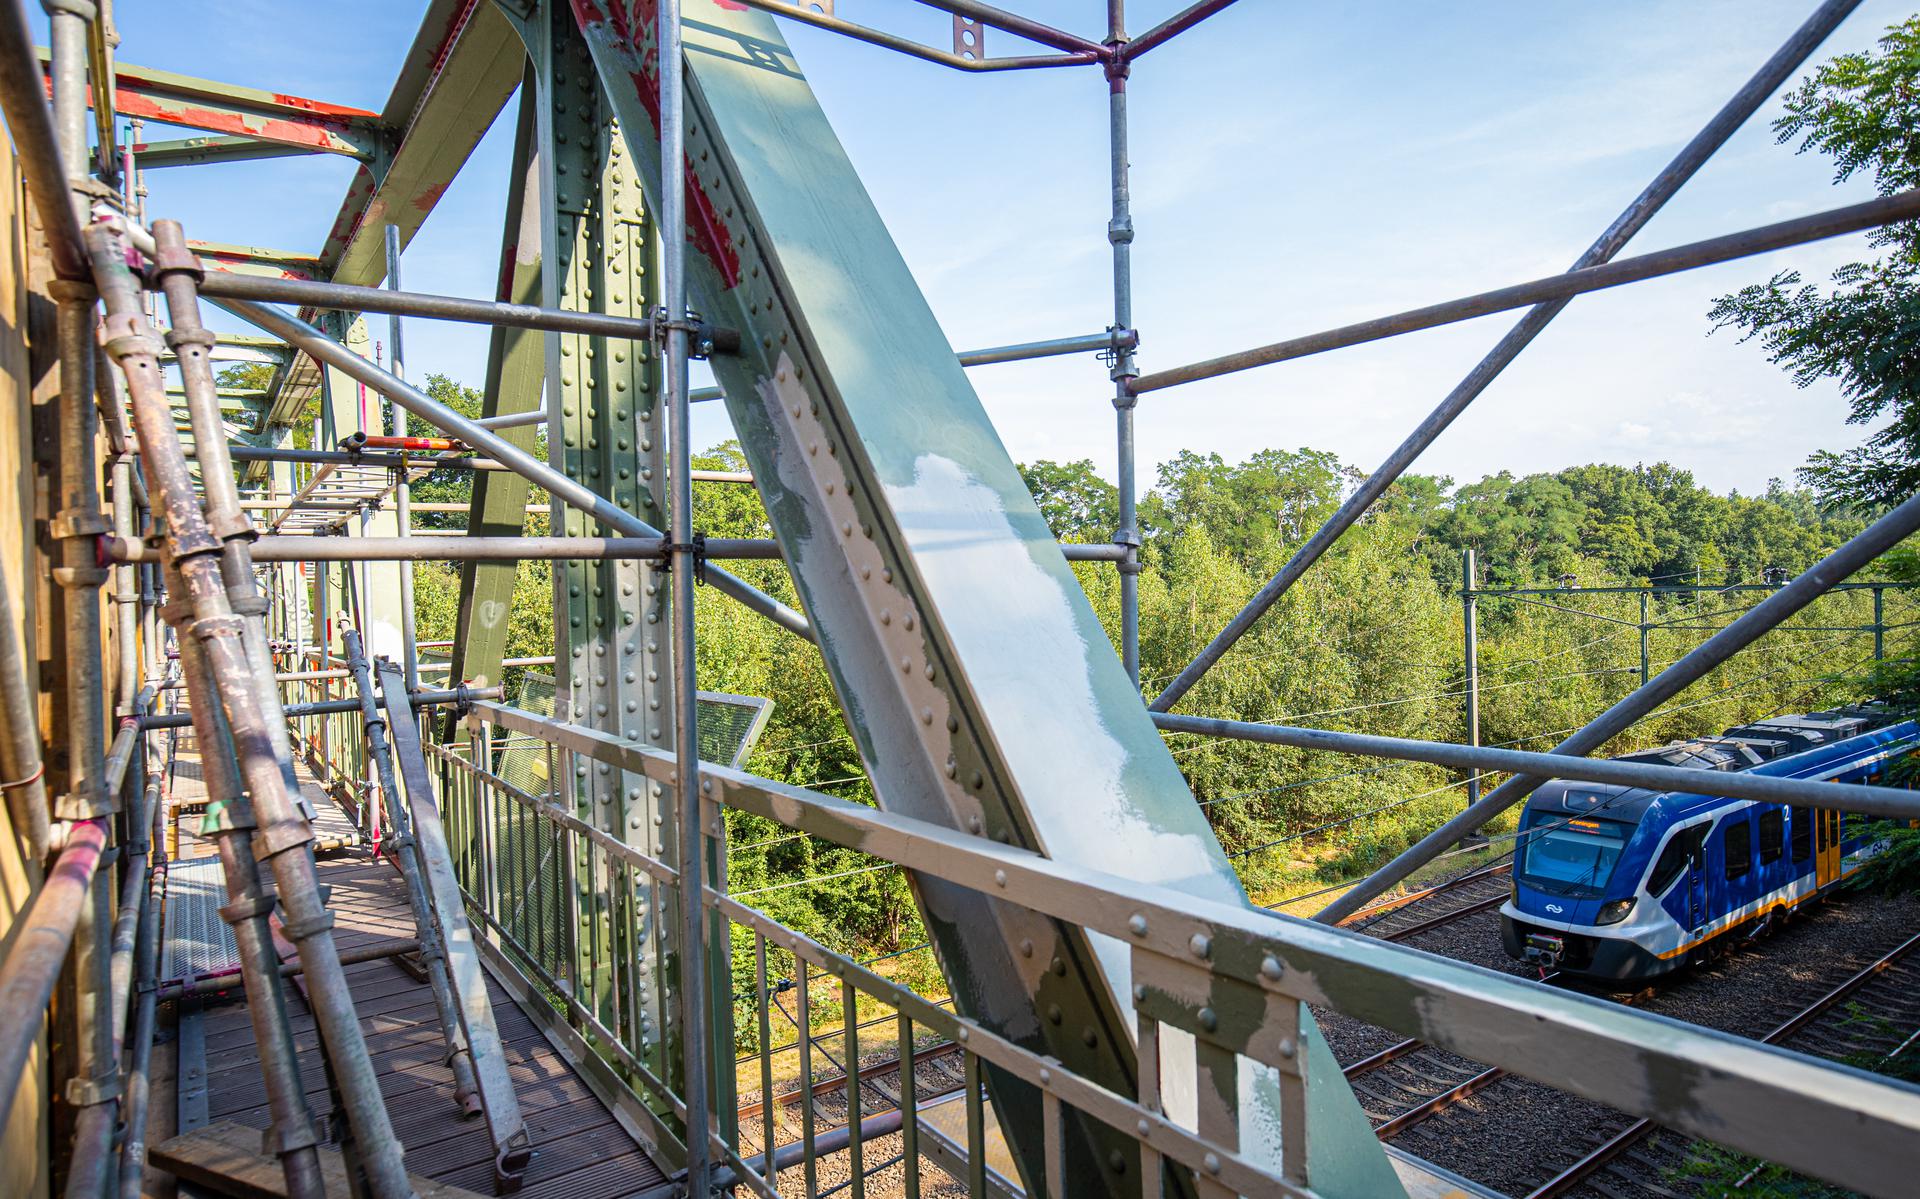 De restauratie van de spoorbrug tussen Onnen en Glimmen duurt langer dan gedacht.